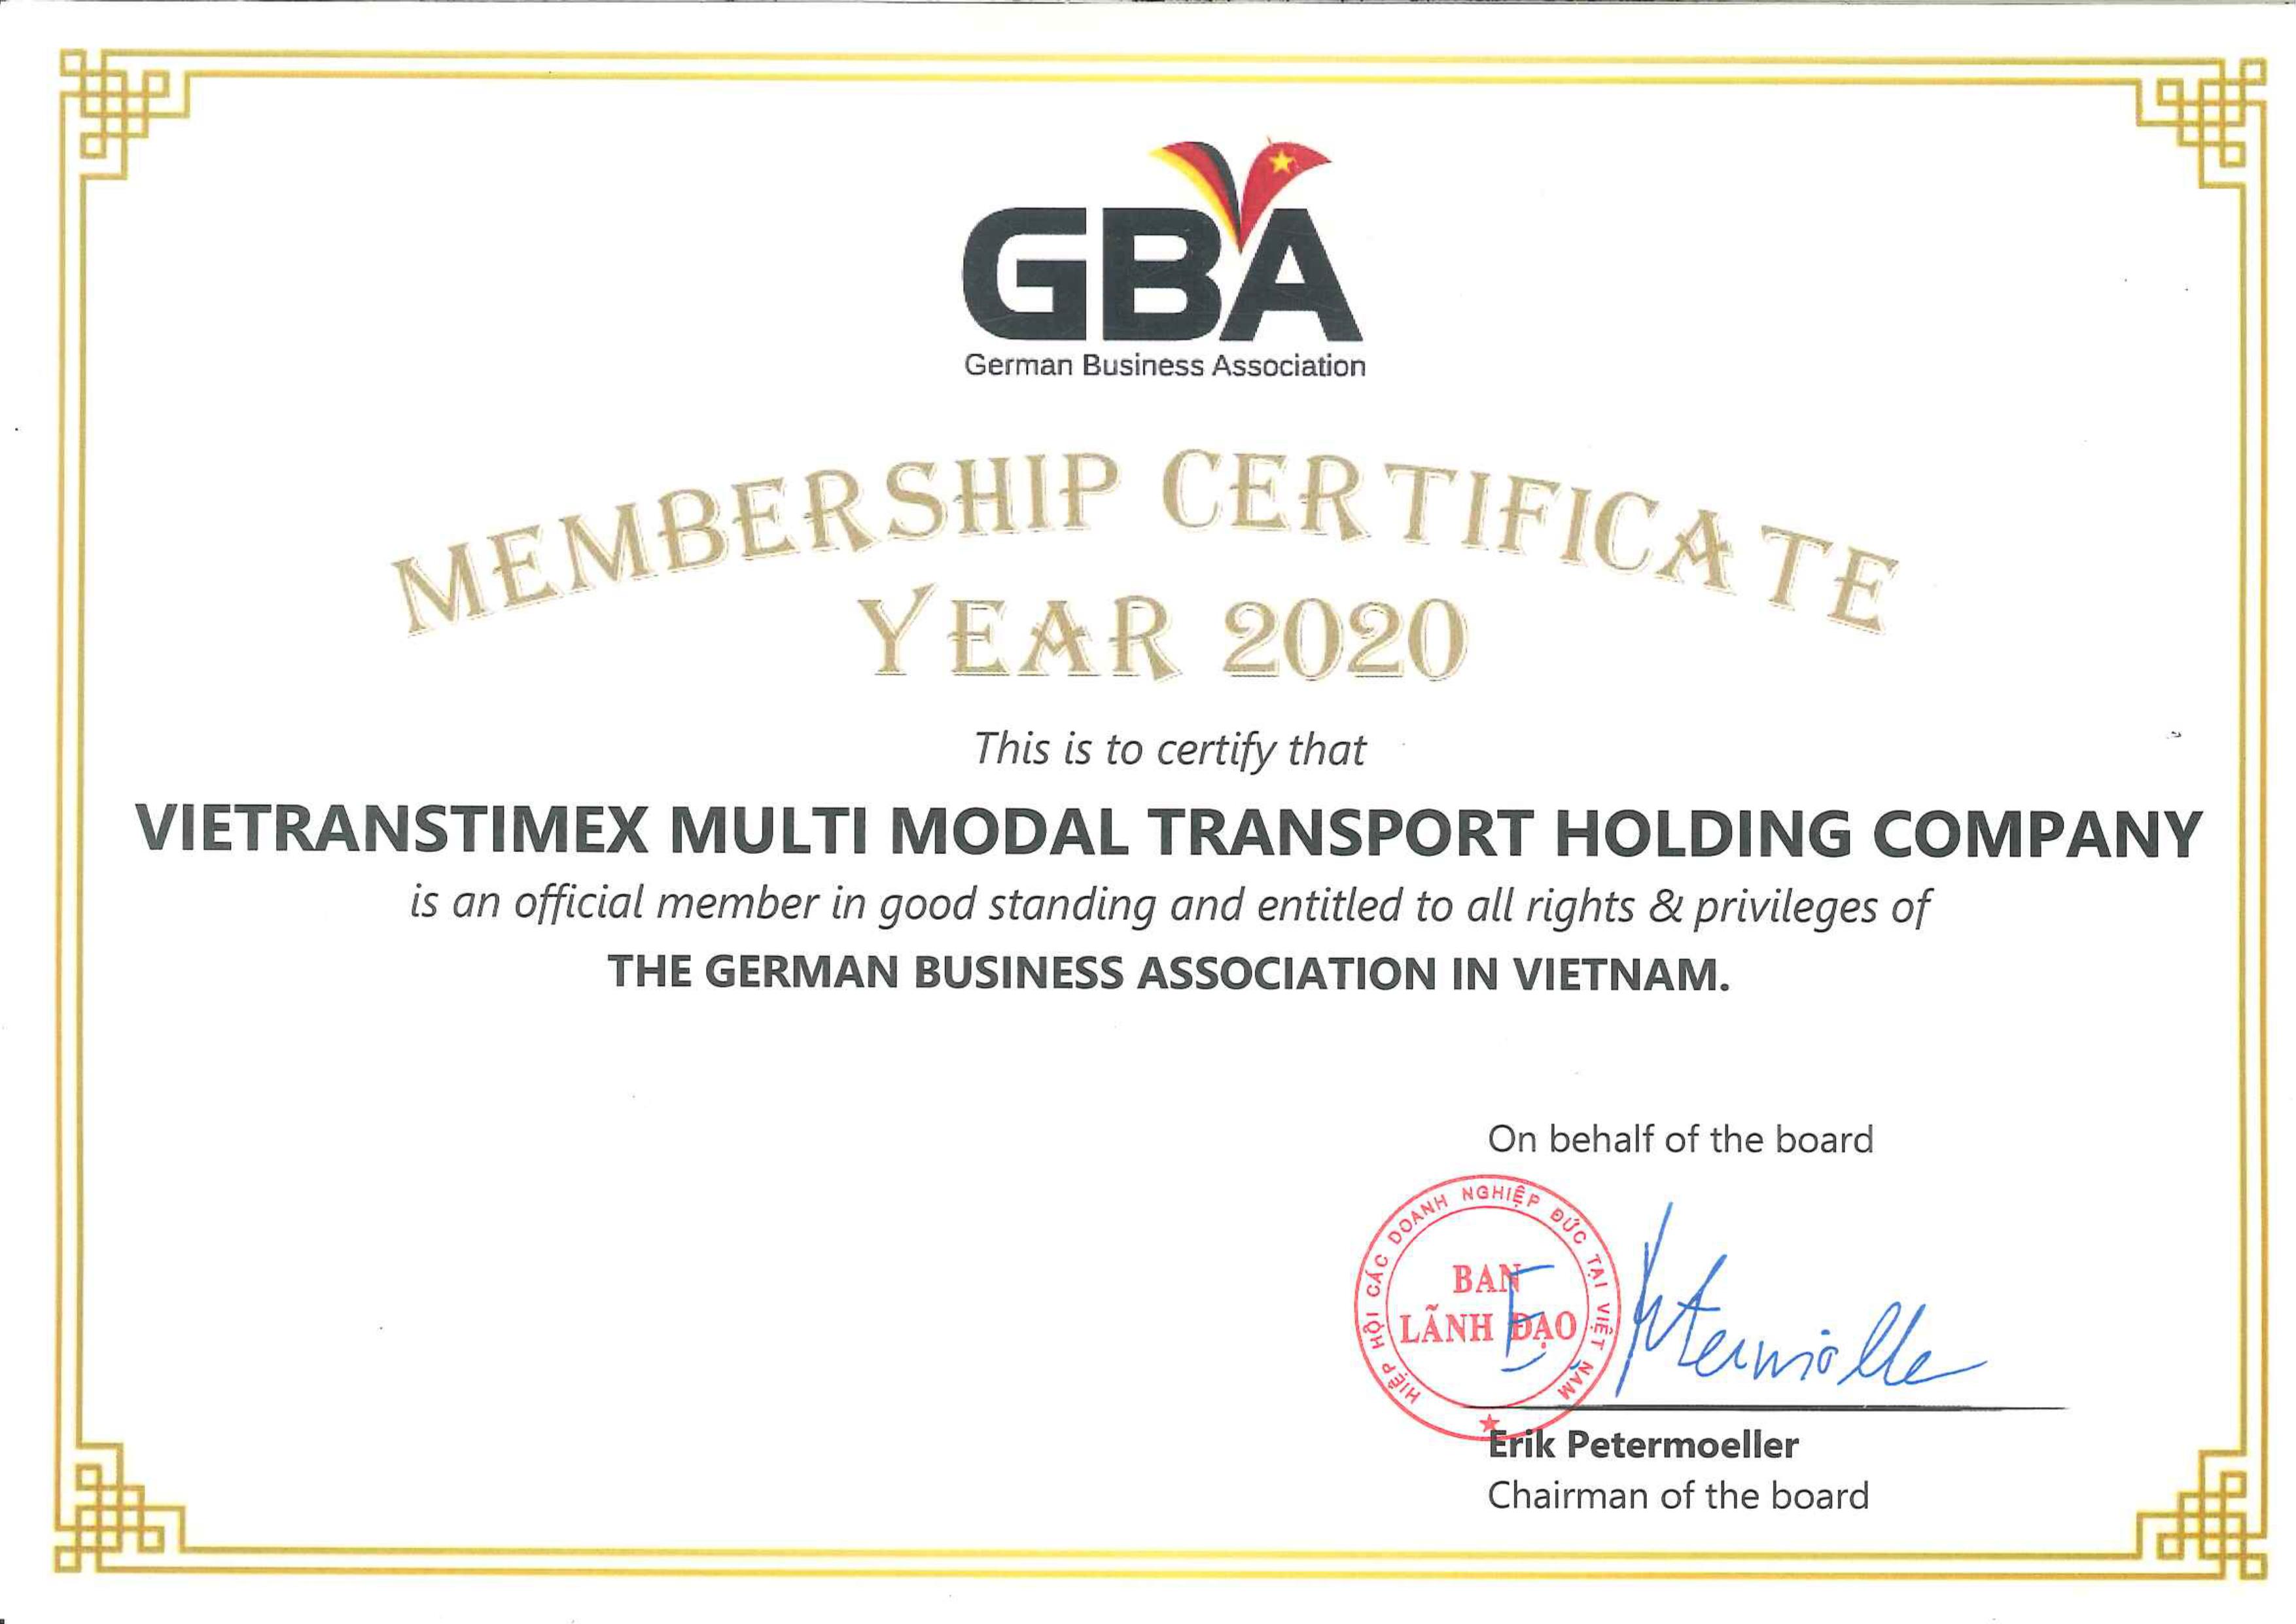 German Business Association